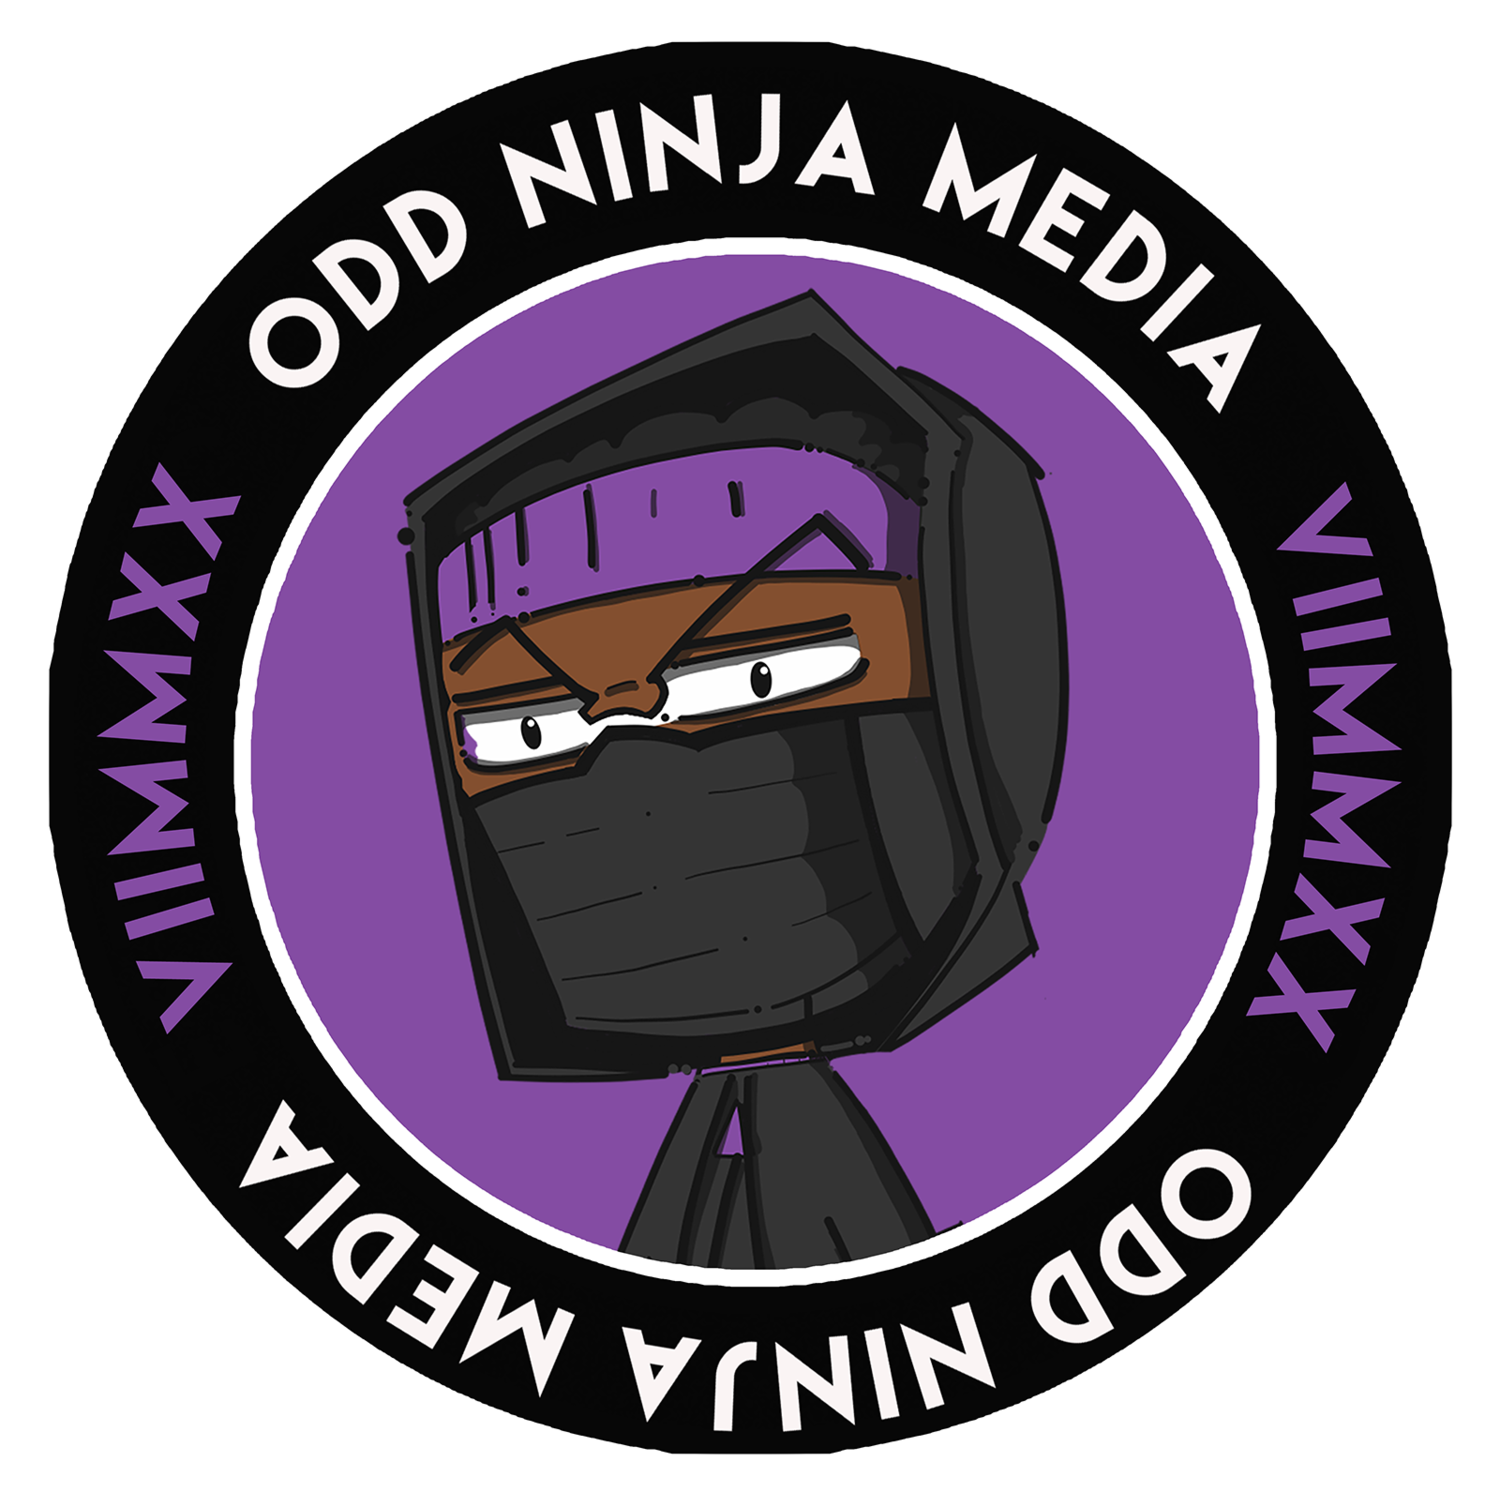 Odd Ninja Media